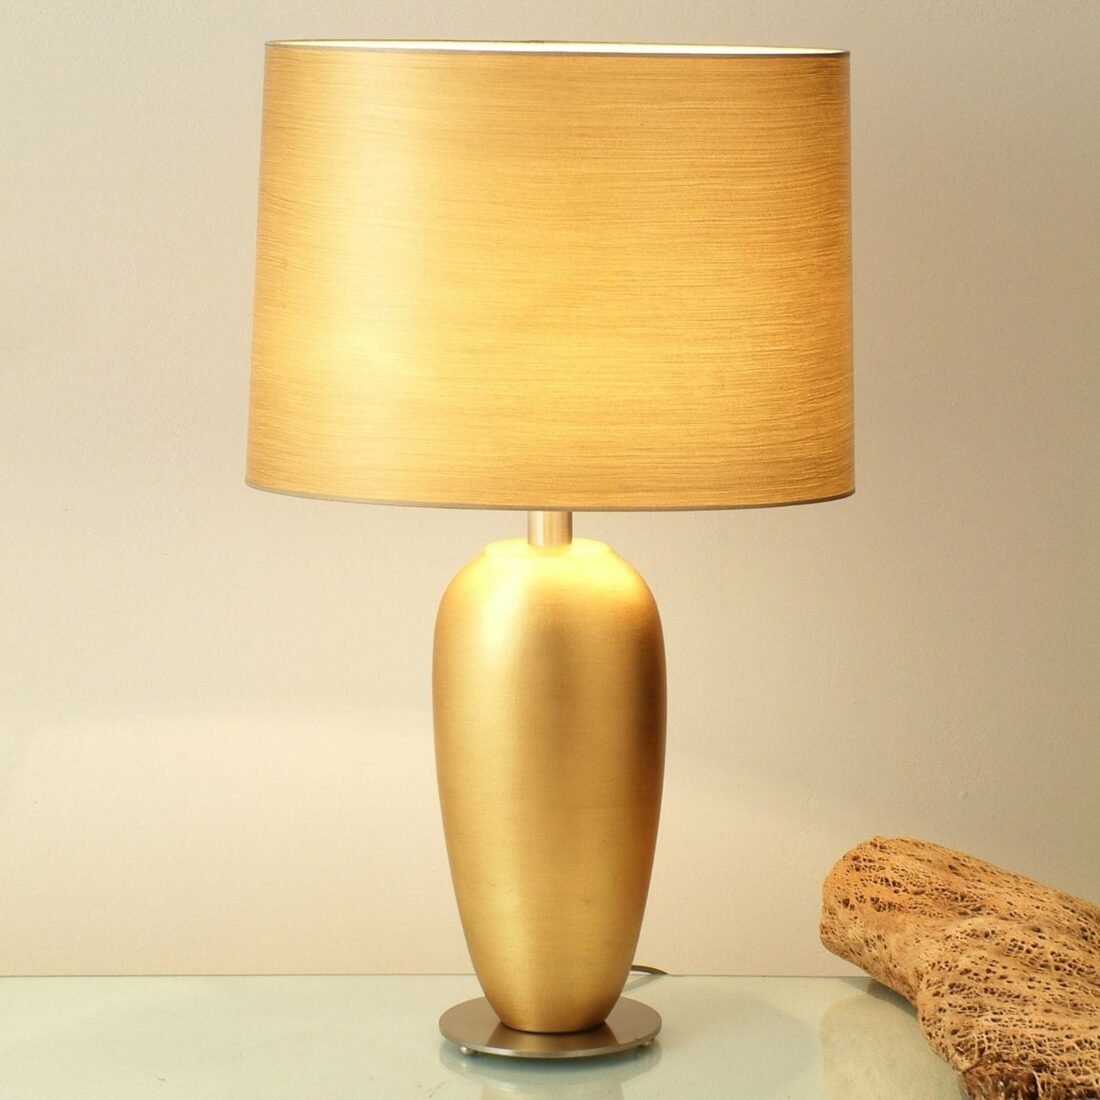 Klasická stolní lampa EPSILON zlatá